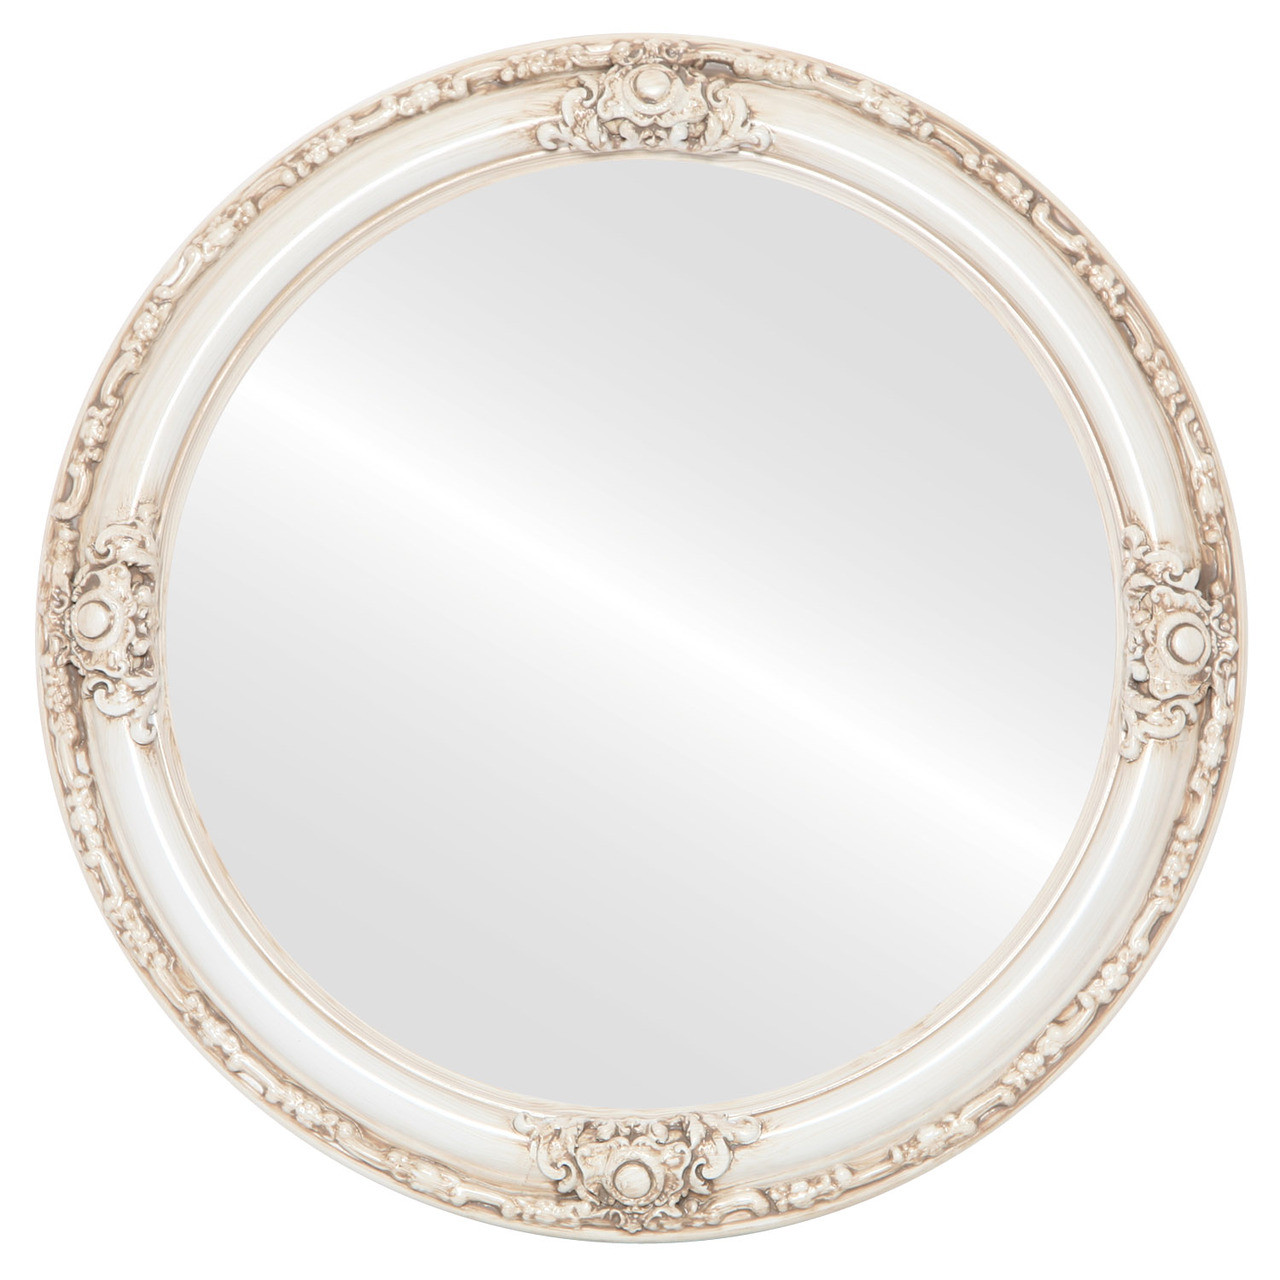 Jefferson Round framed mirror Ant Wht |Victorian Frames